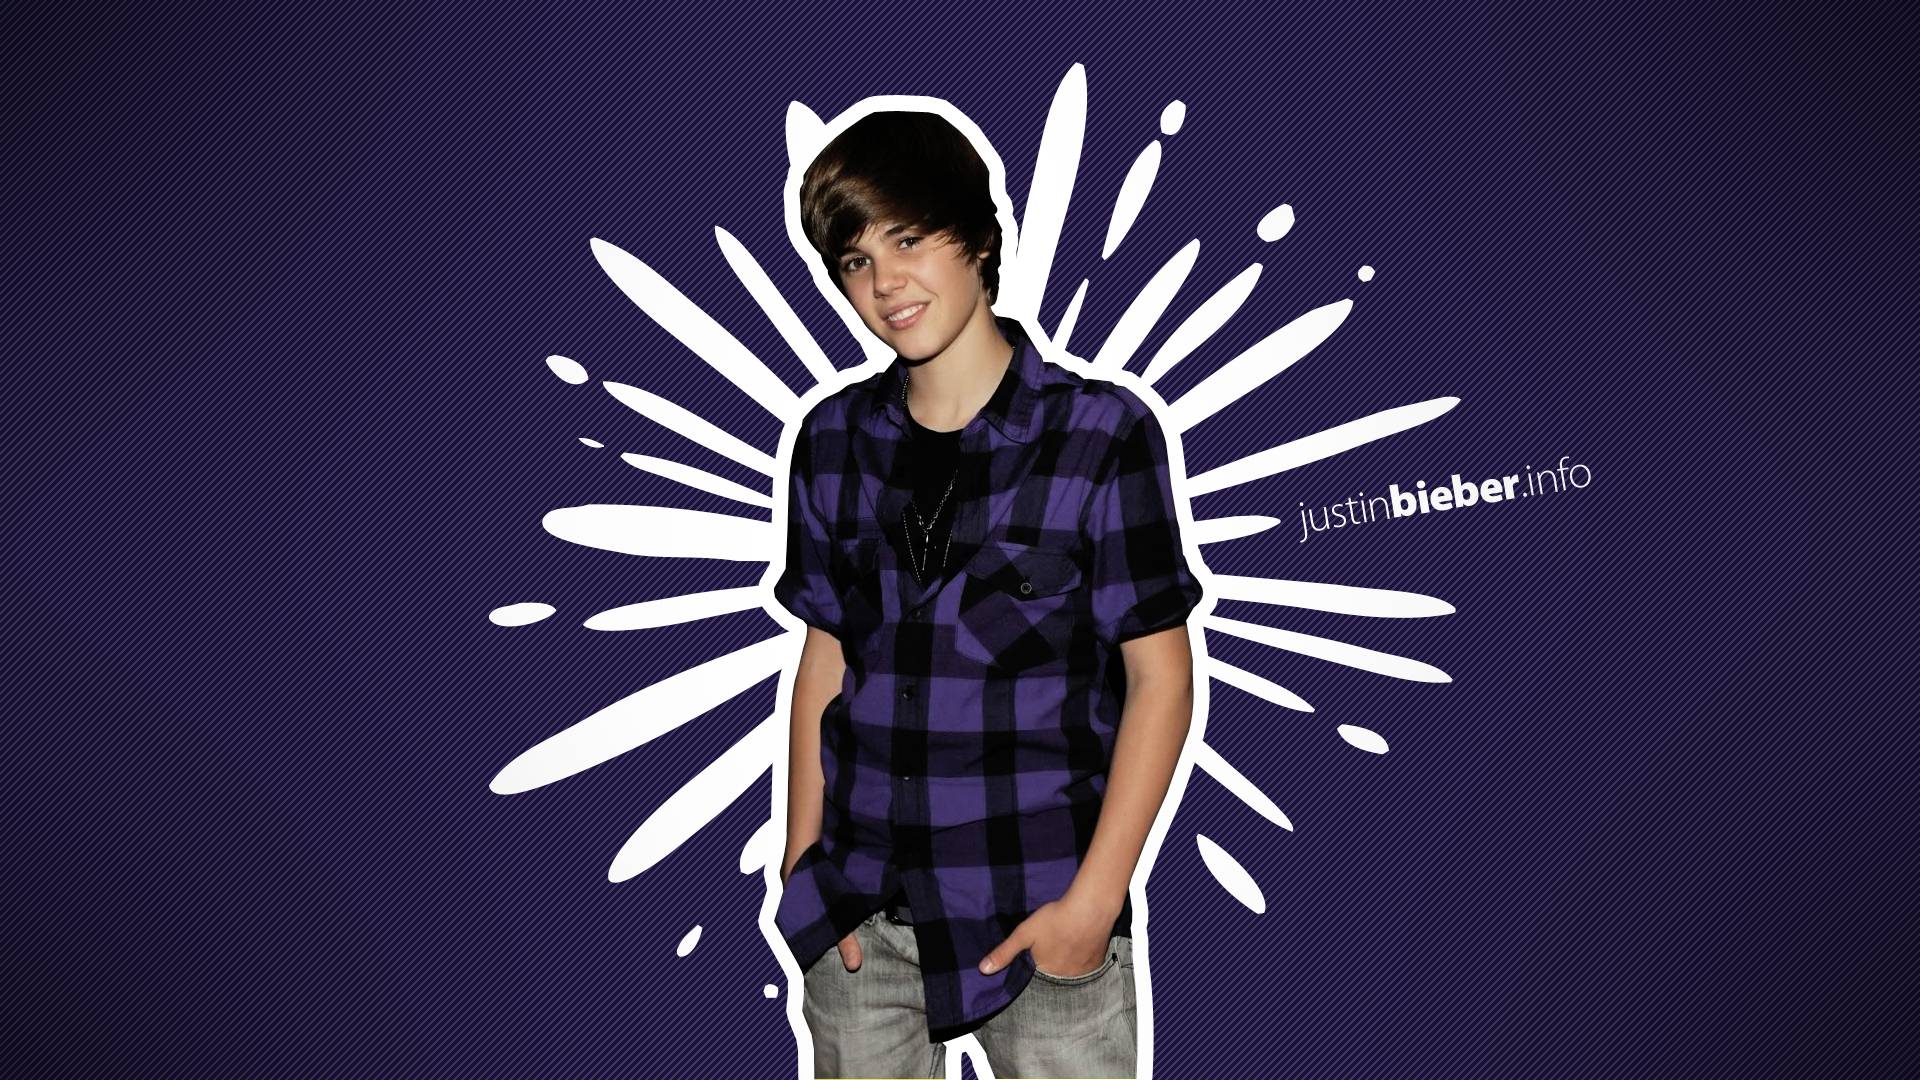 Justin Bieber Wallpapers for 2015 for for Desktop